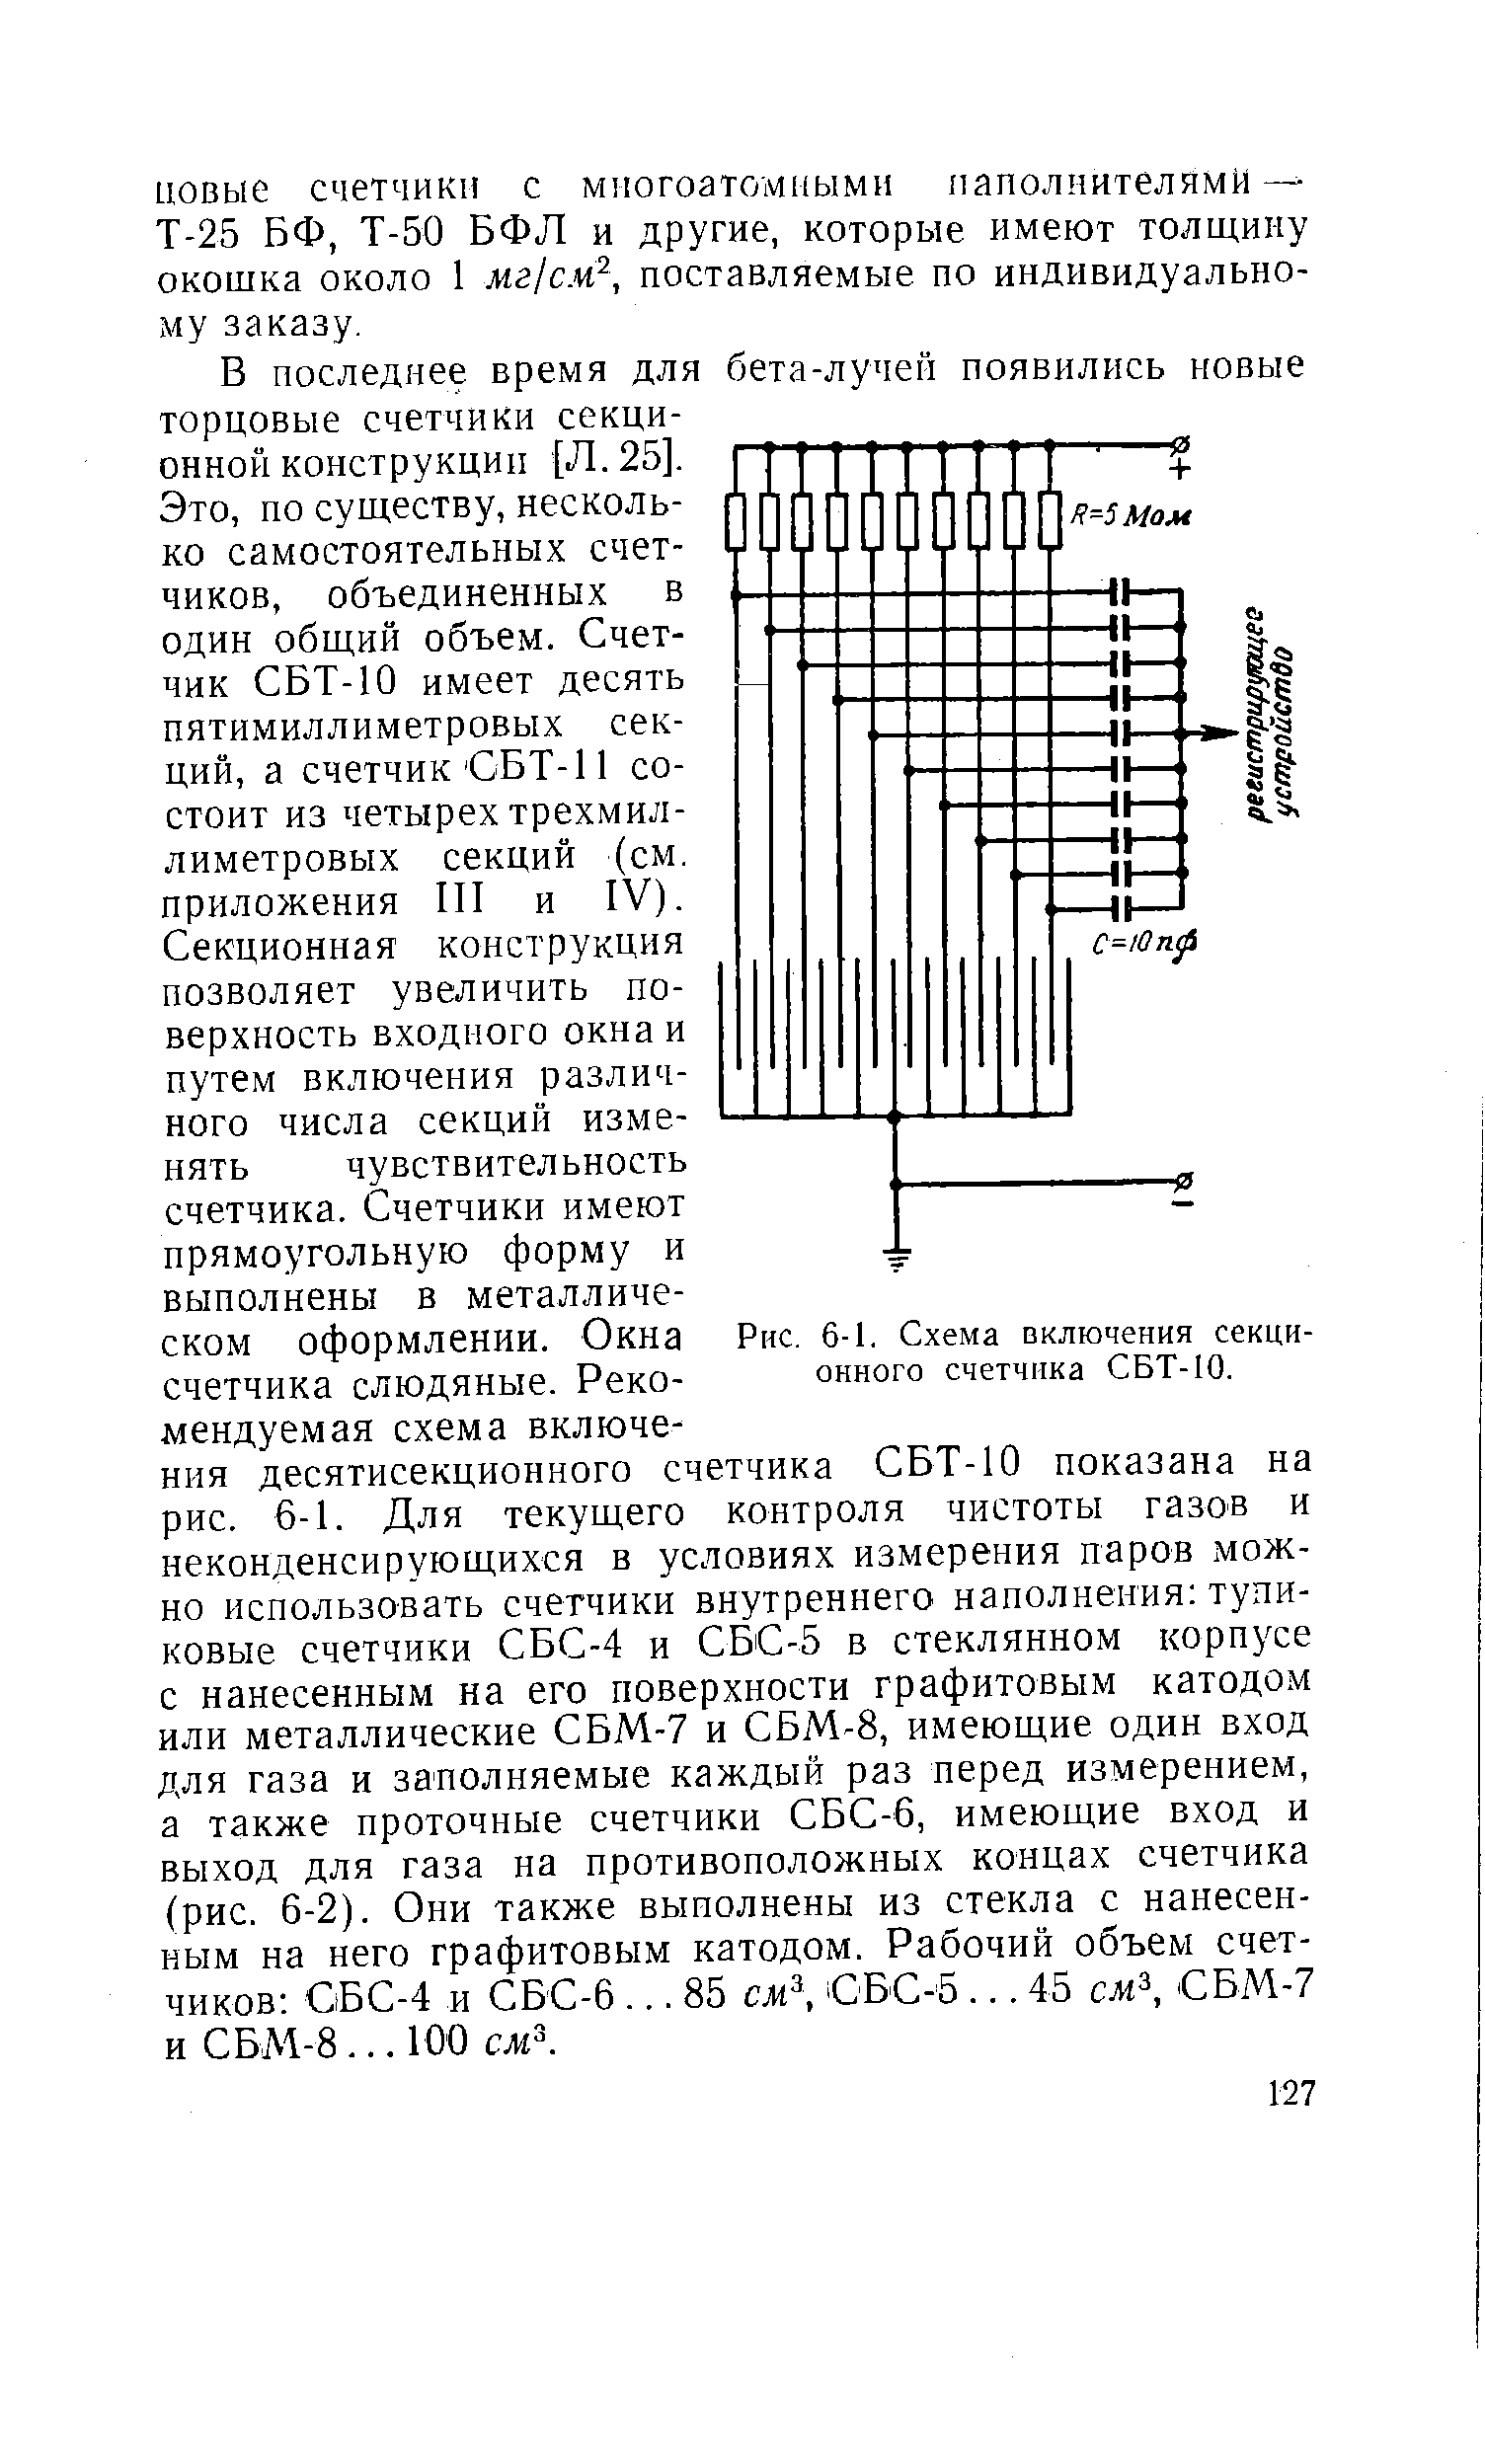 Рис. 6-1. Схема включения секционного счетчика СБТ-10.
